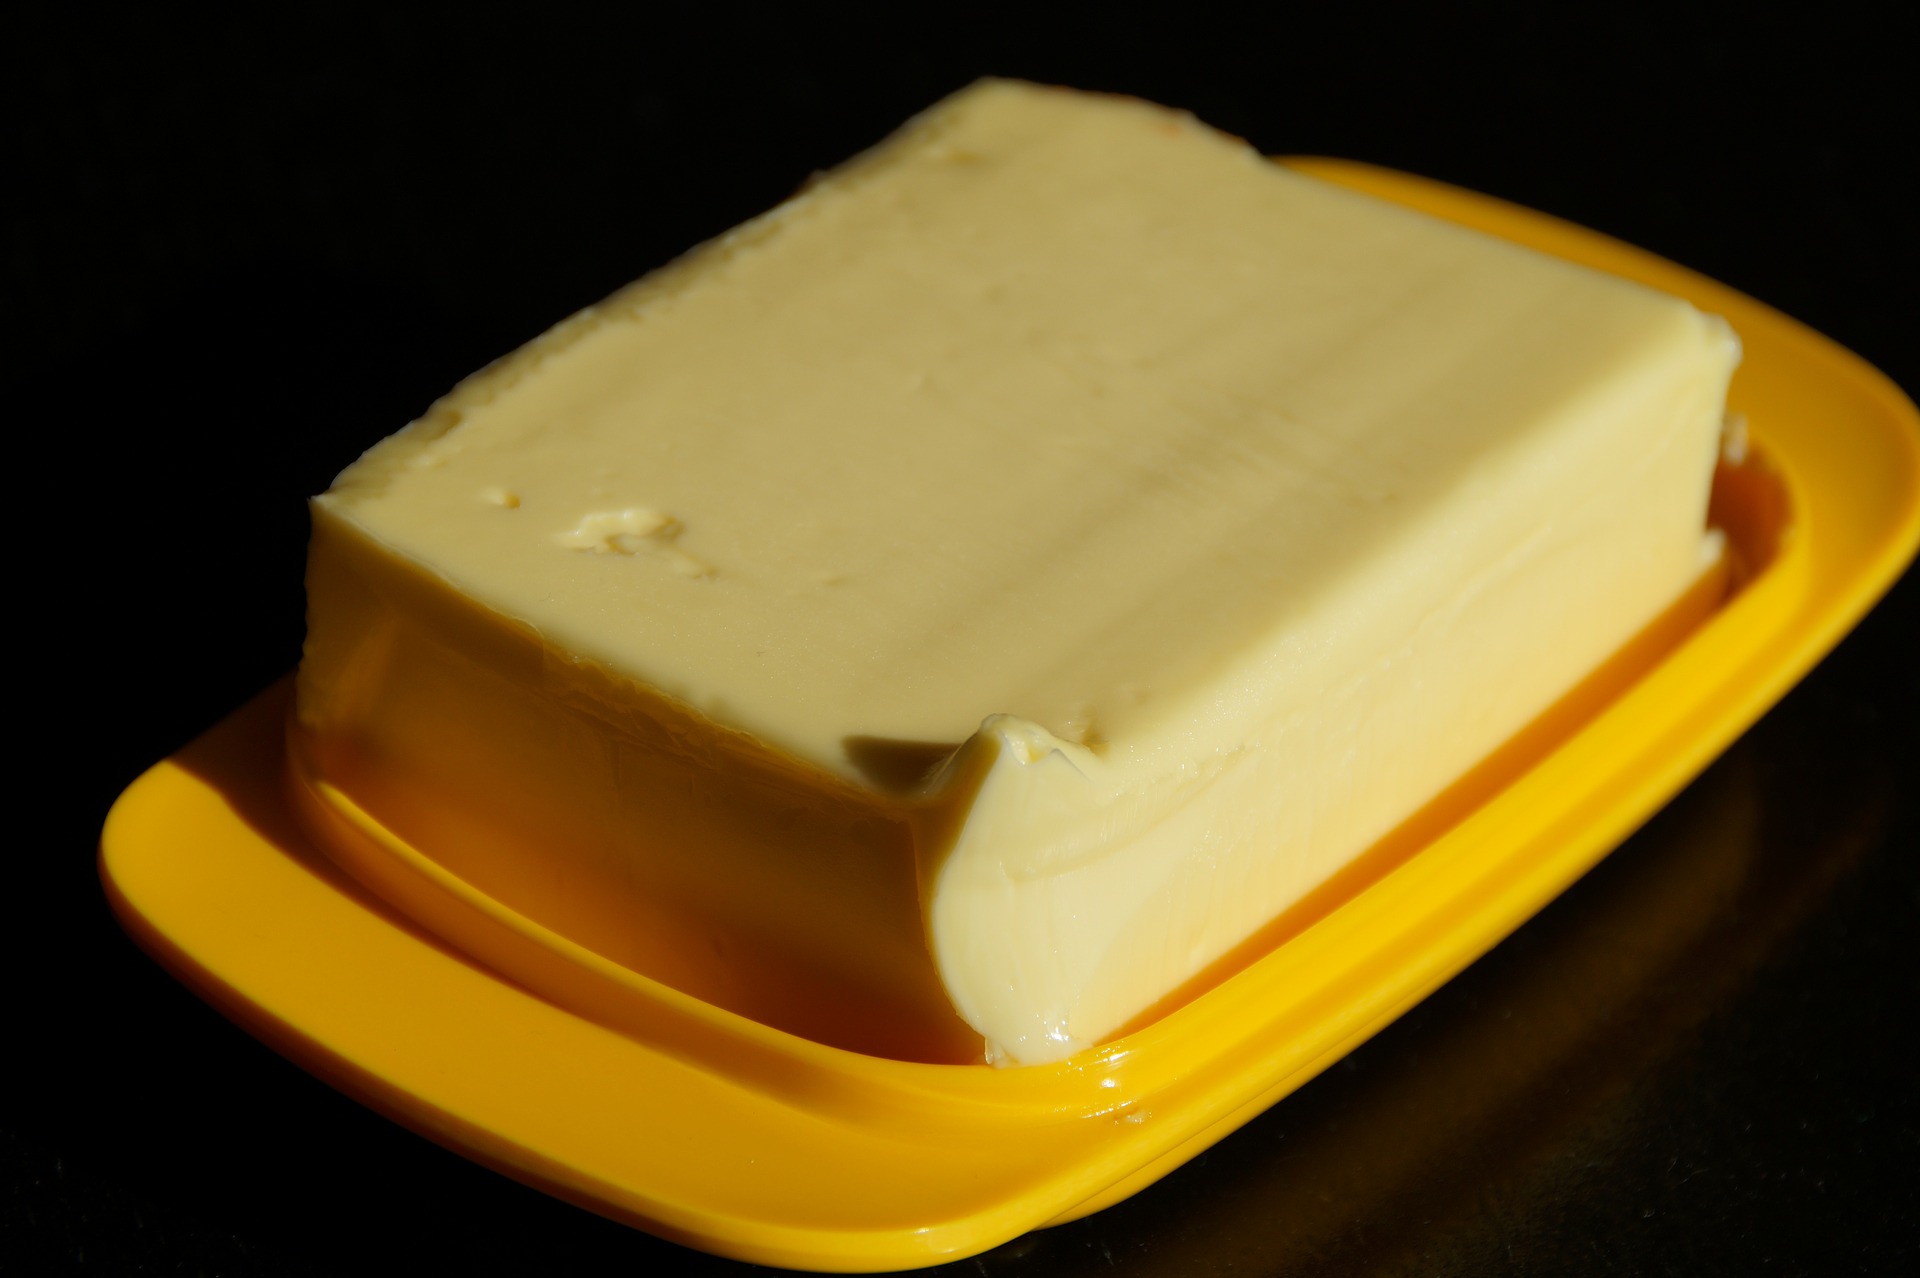 22 fakty o maśle, czyli dlaczego warto jeść masło – Nutrigo